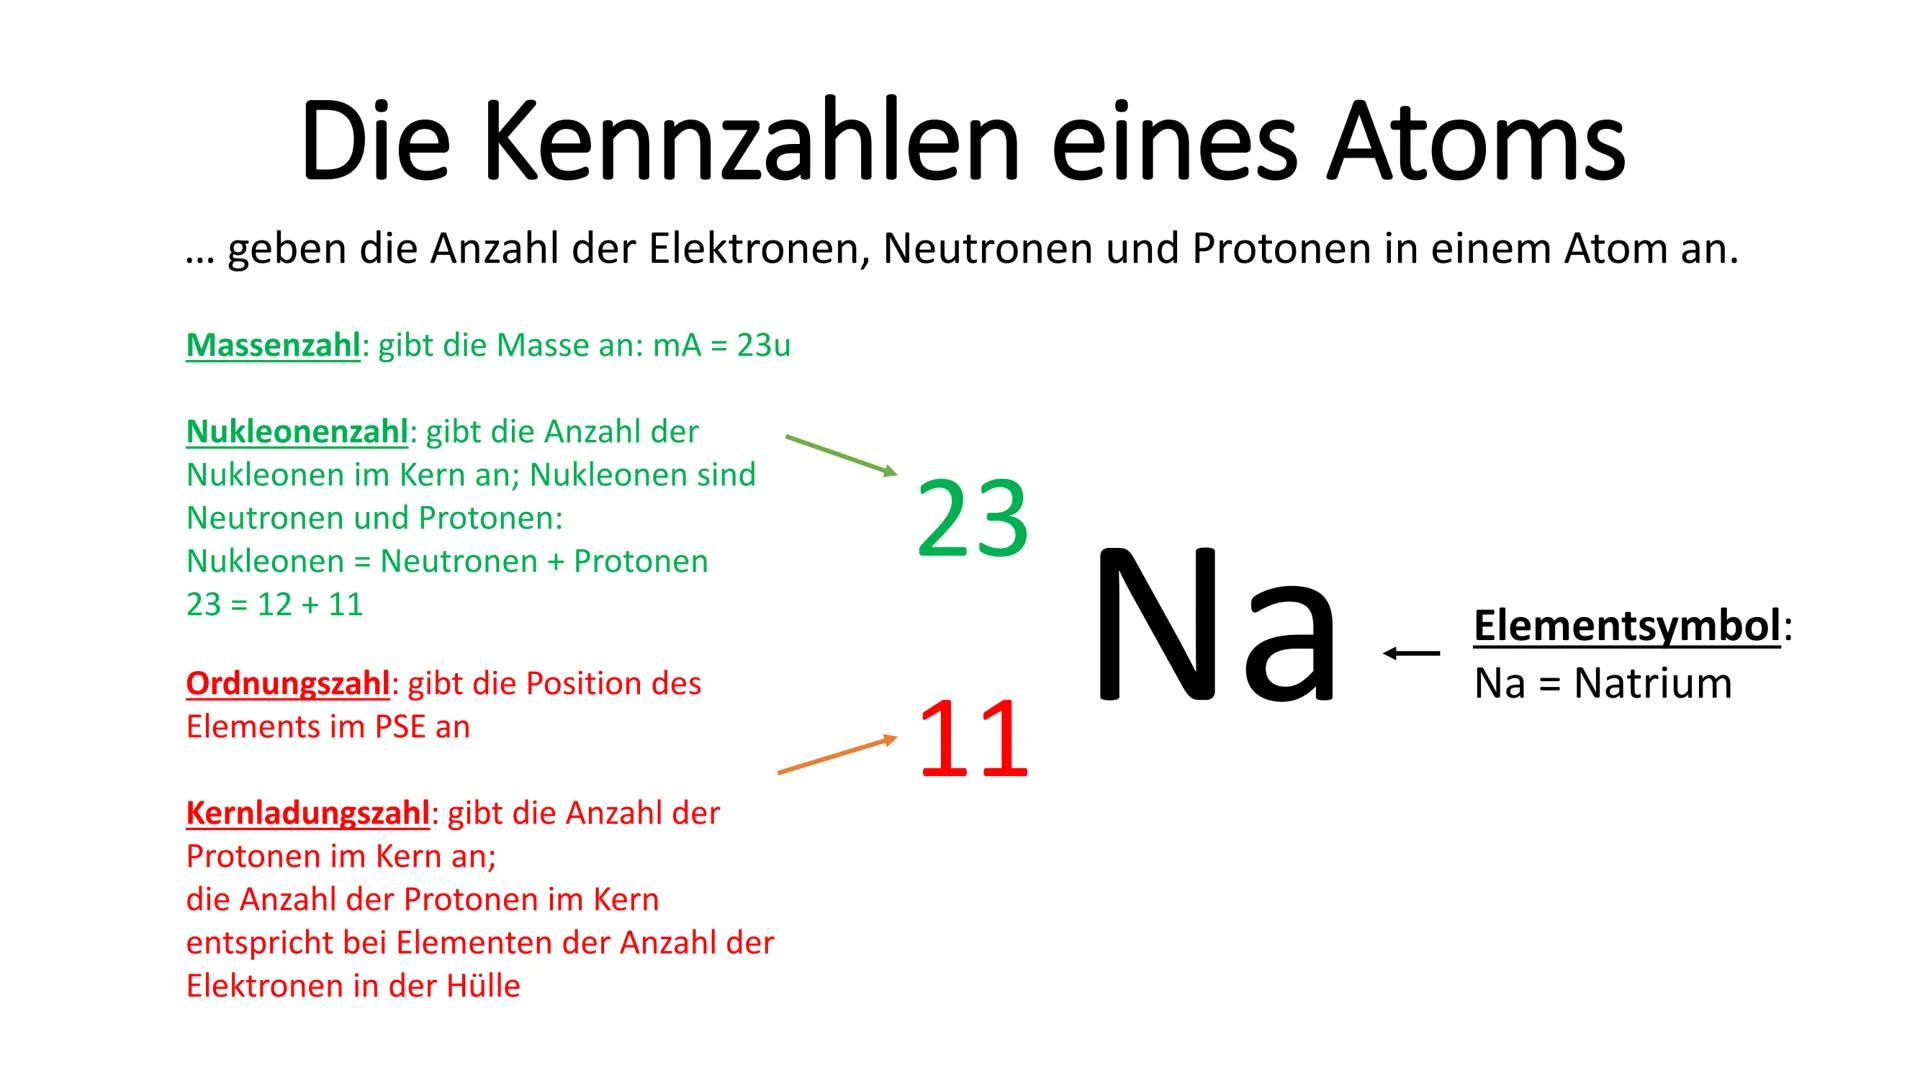 Die Kennzahlen eines Atoms
geben die Anzahl der Elektronen, Neutronen und Protonen in einem Atom an.
Massenzahl: gibt die Masse an: mA = 23u